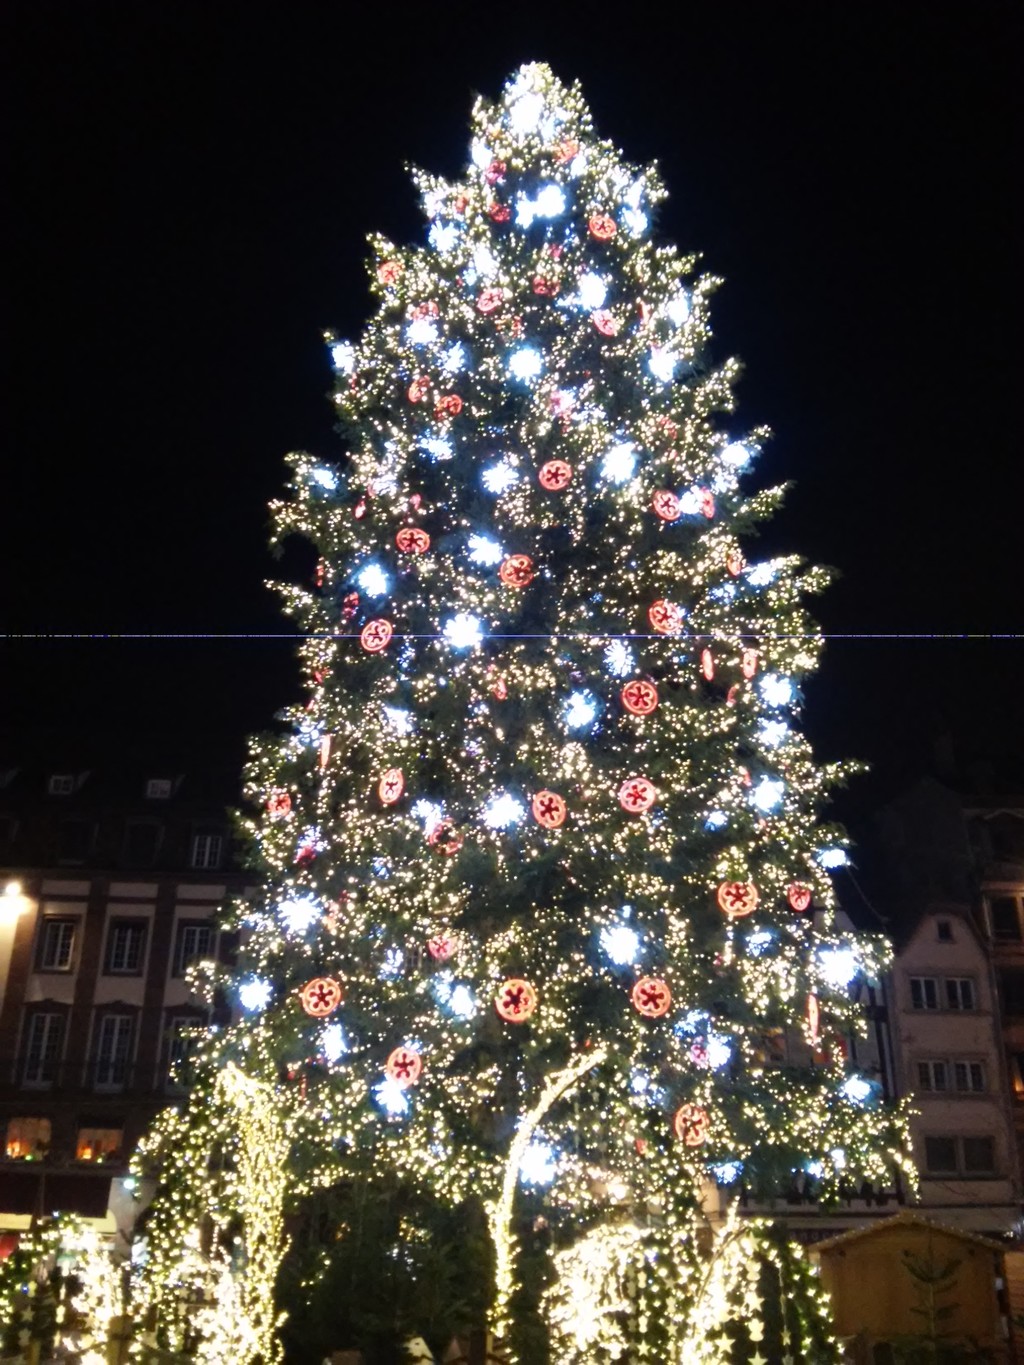 Le Marché de Noël de Strasbourg